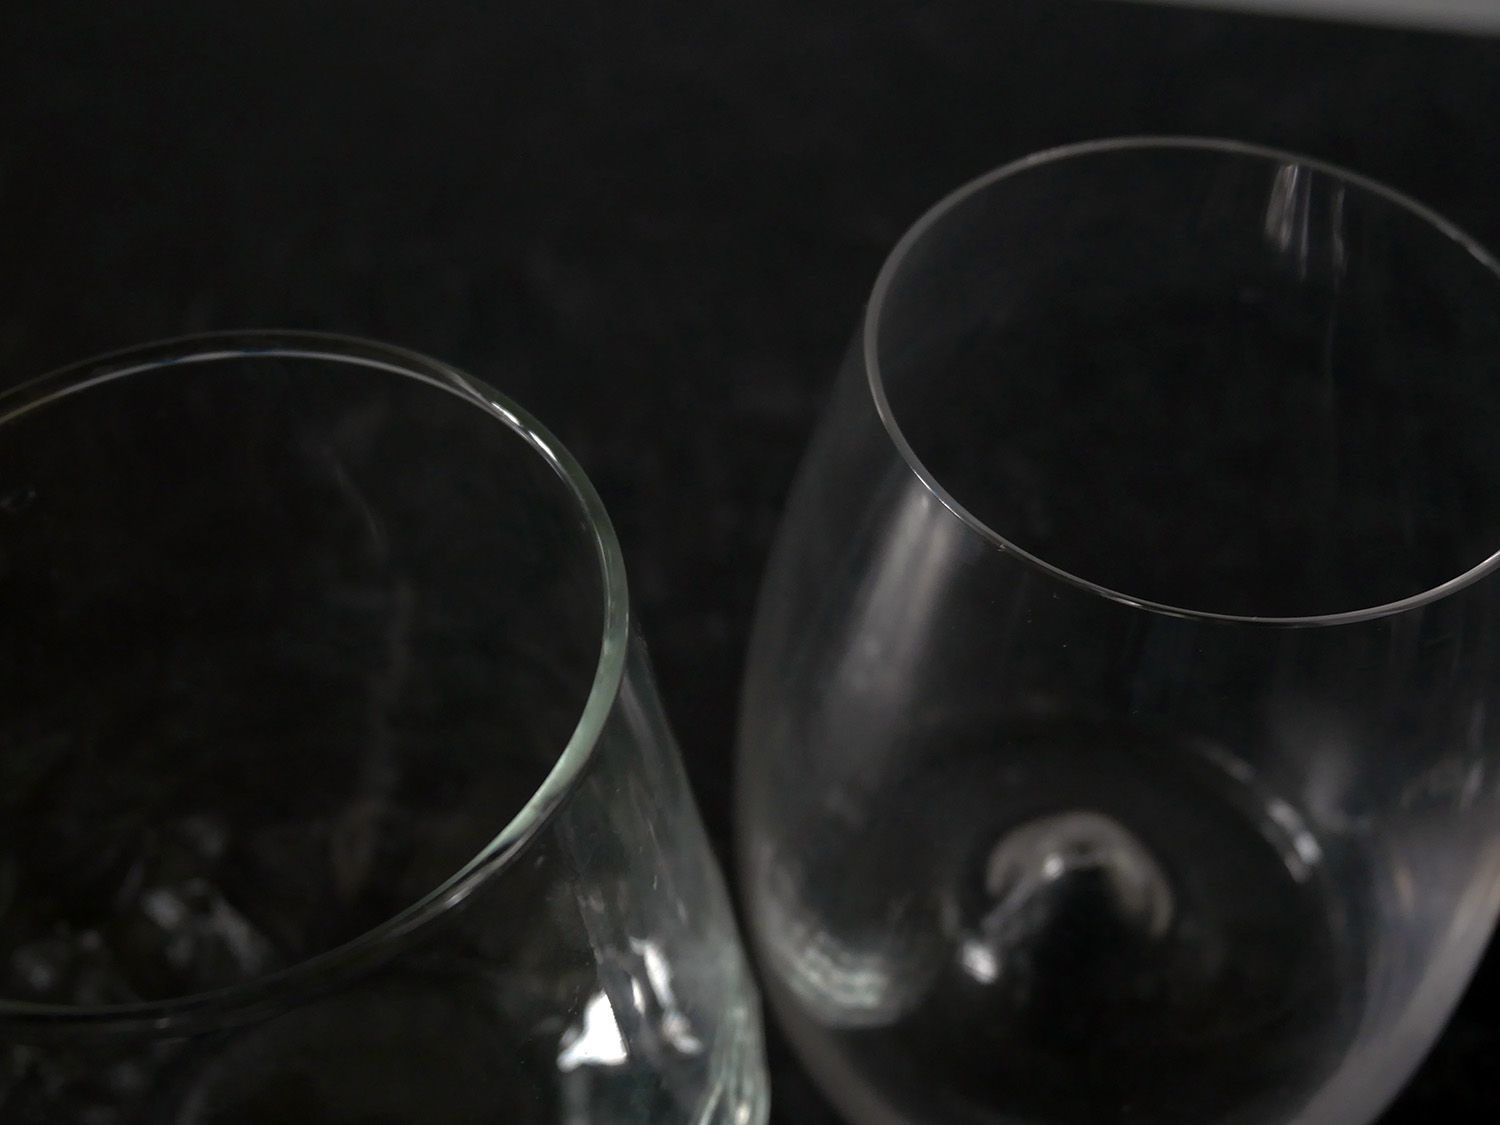 沃特福德玻璃杯的边缘与利比玻璃杯的球根边缘形成对比